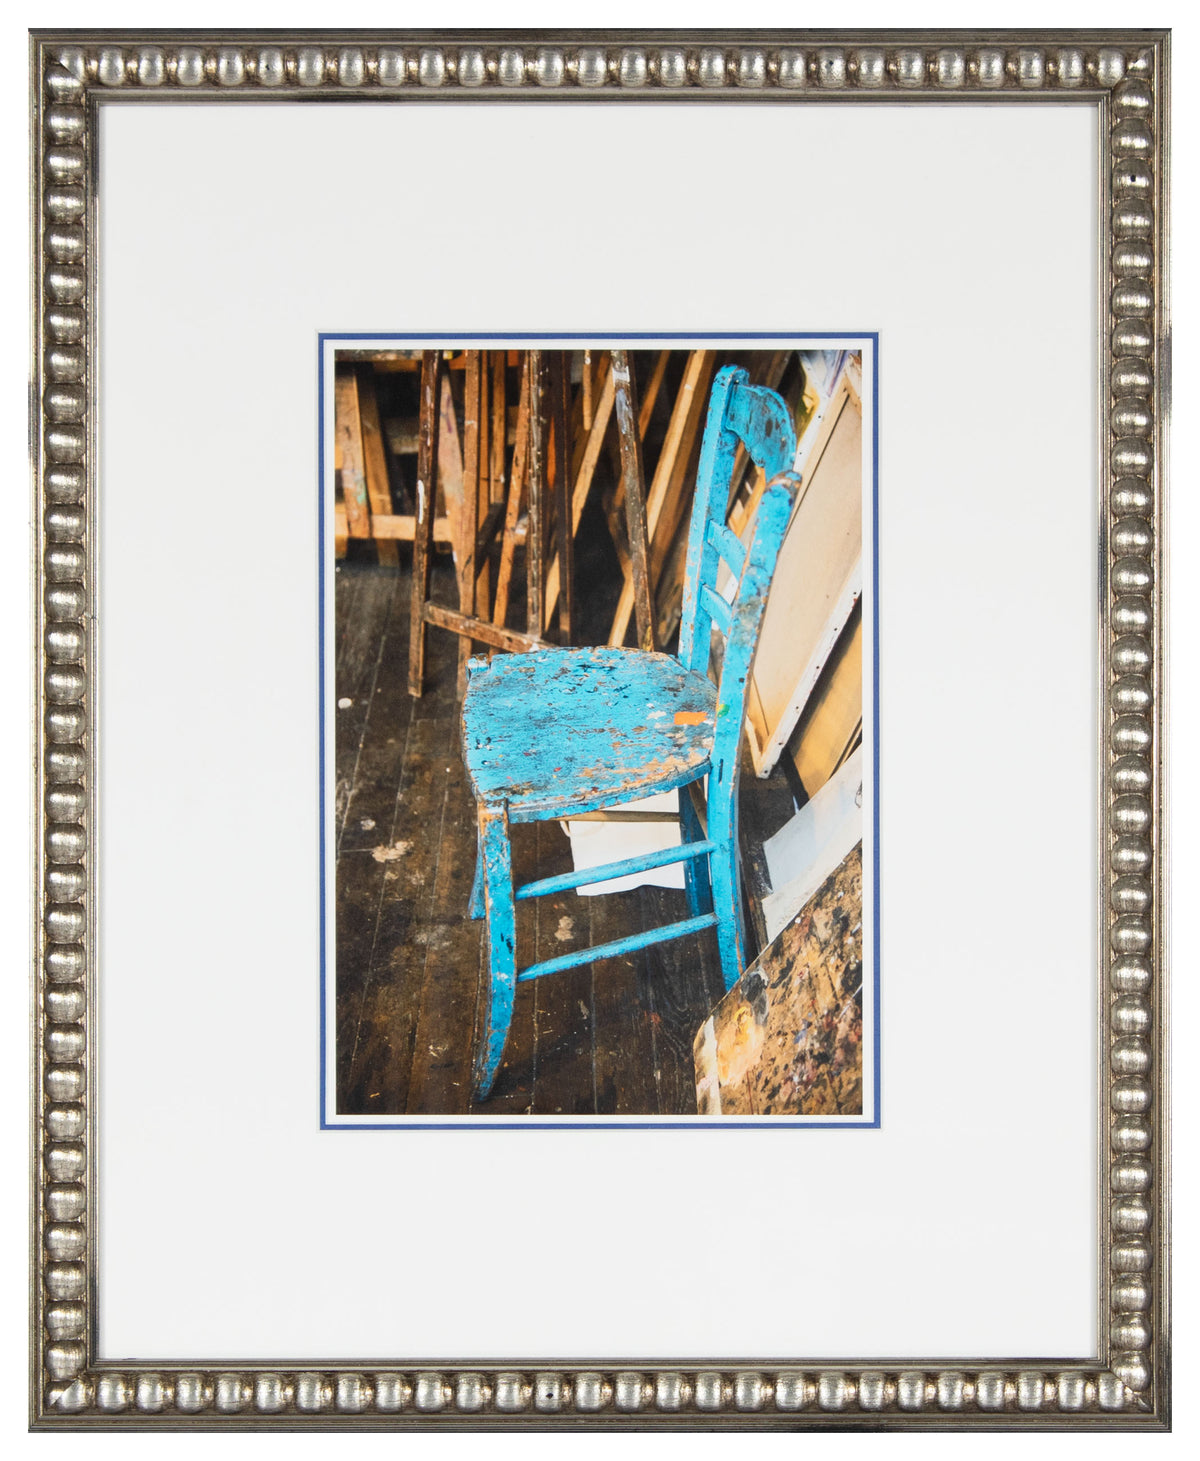 &lt;i&gt;La chaise bleue&lt;/i&gt; &lt;br&gt;2019 Paris, France &lt;br&gt;&lt;br&gt;GC0475